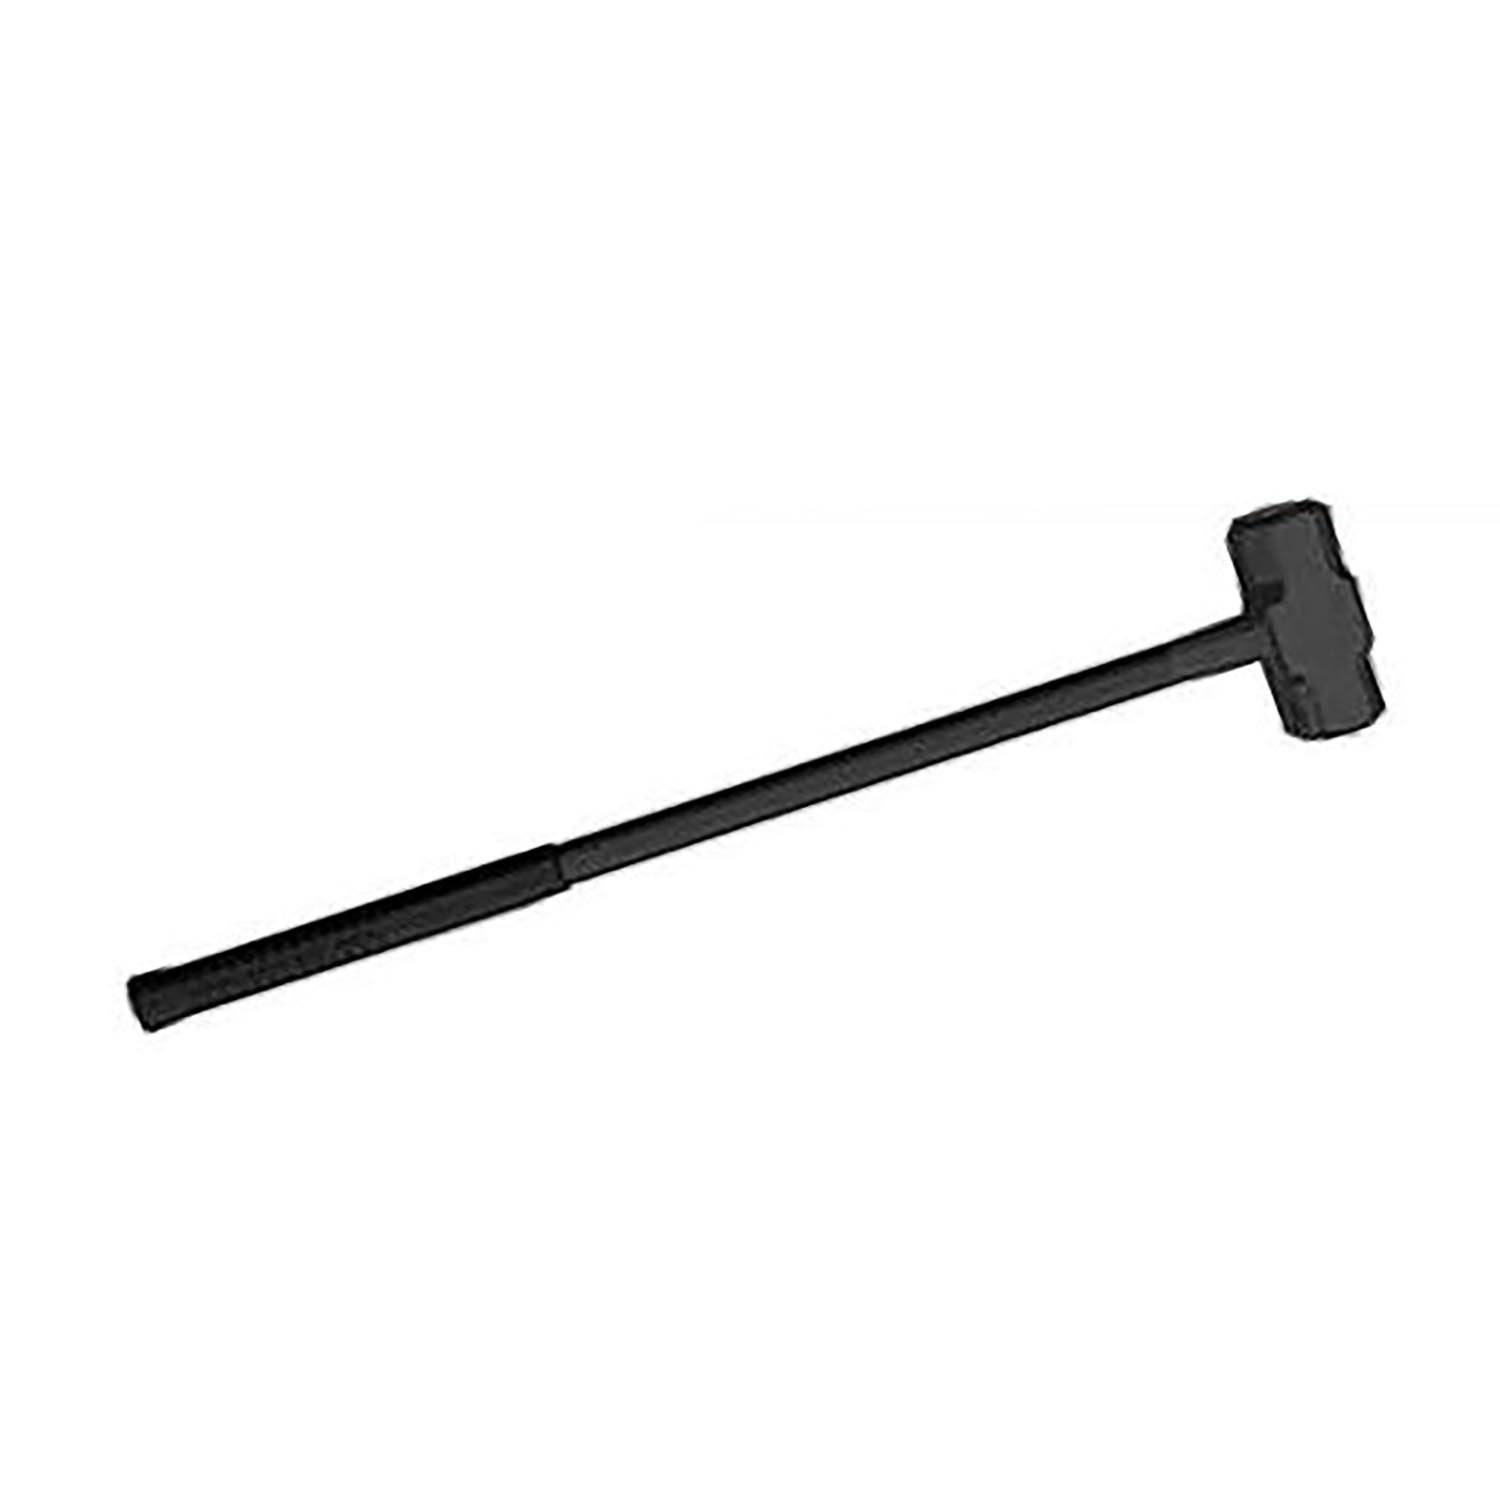 Leatherhead Tools 10lbs Sledgehammer Fiberglass Handle